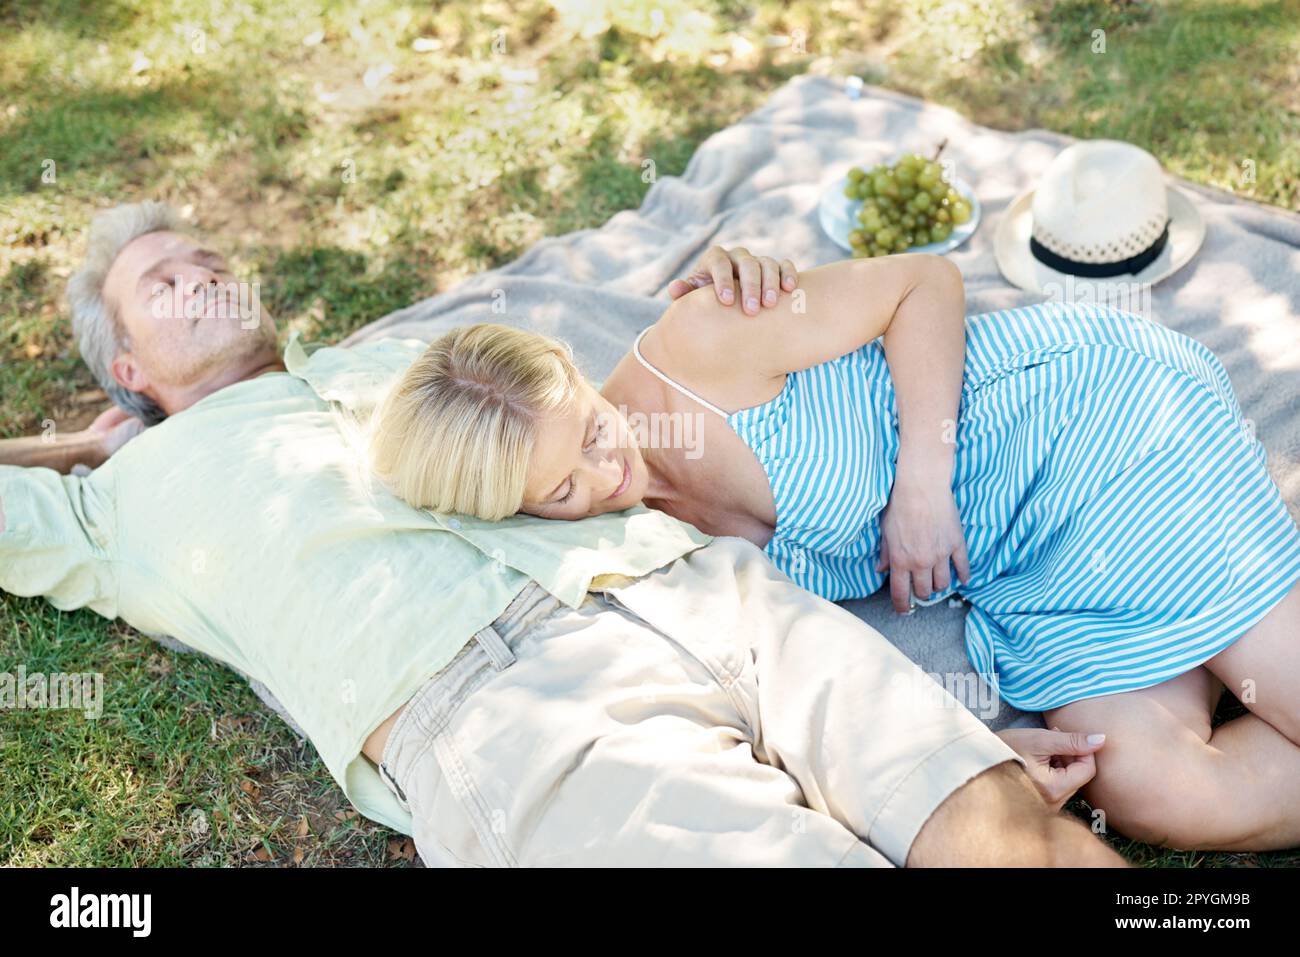 Lassen Sie die frische Luft Ihren Stress vergessen... Ein entspannter Mann und eine entspannte Frau, die auf einer Decke liegen und ein gemütliches Picknick im Park genießen. Stockfoto